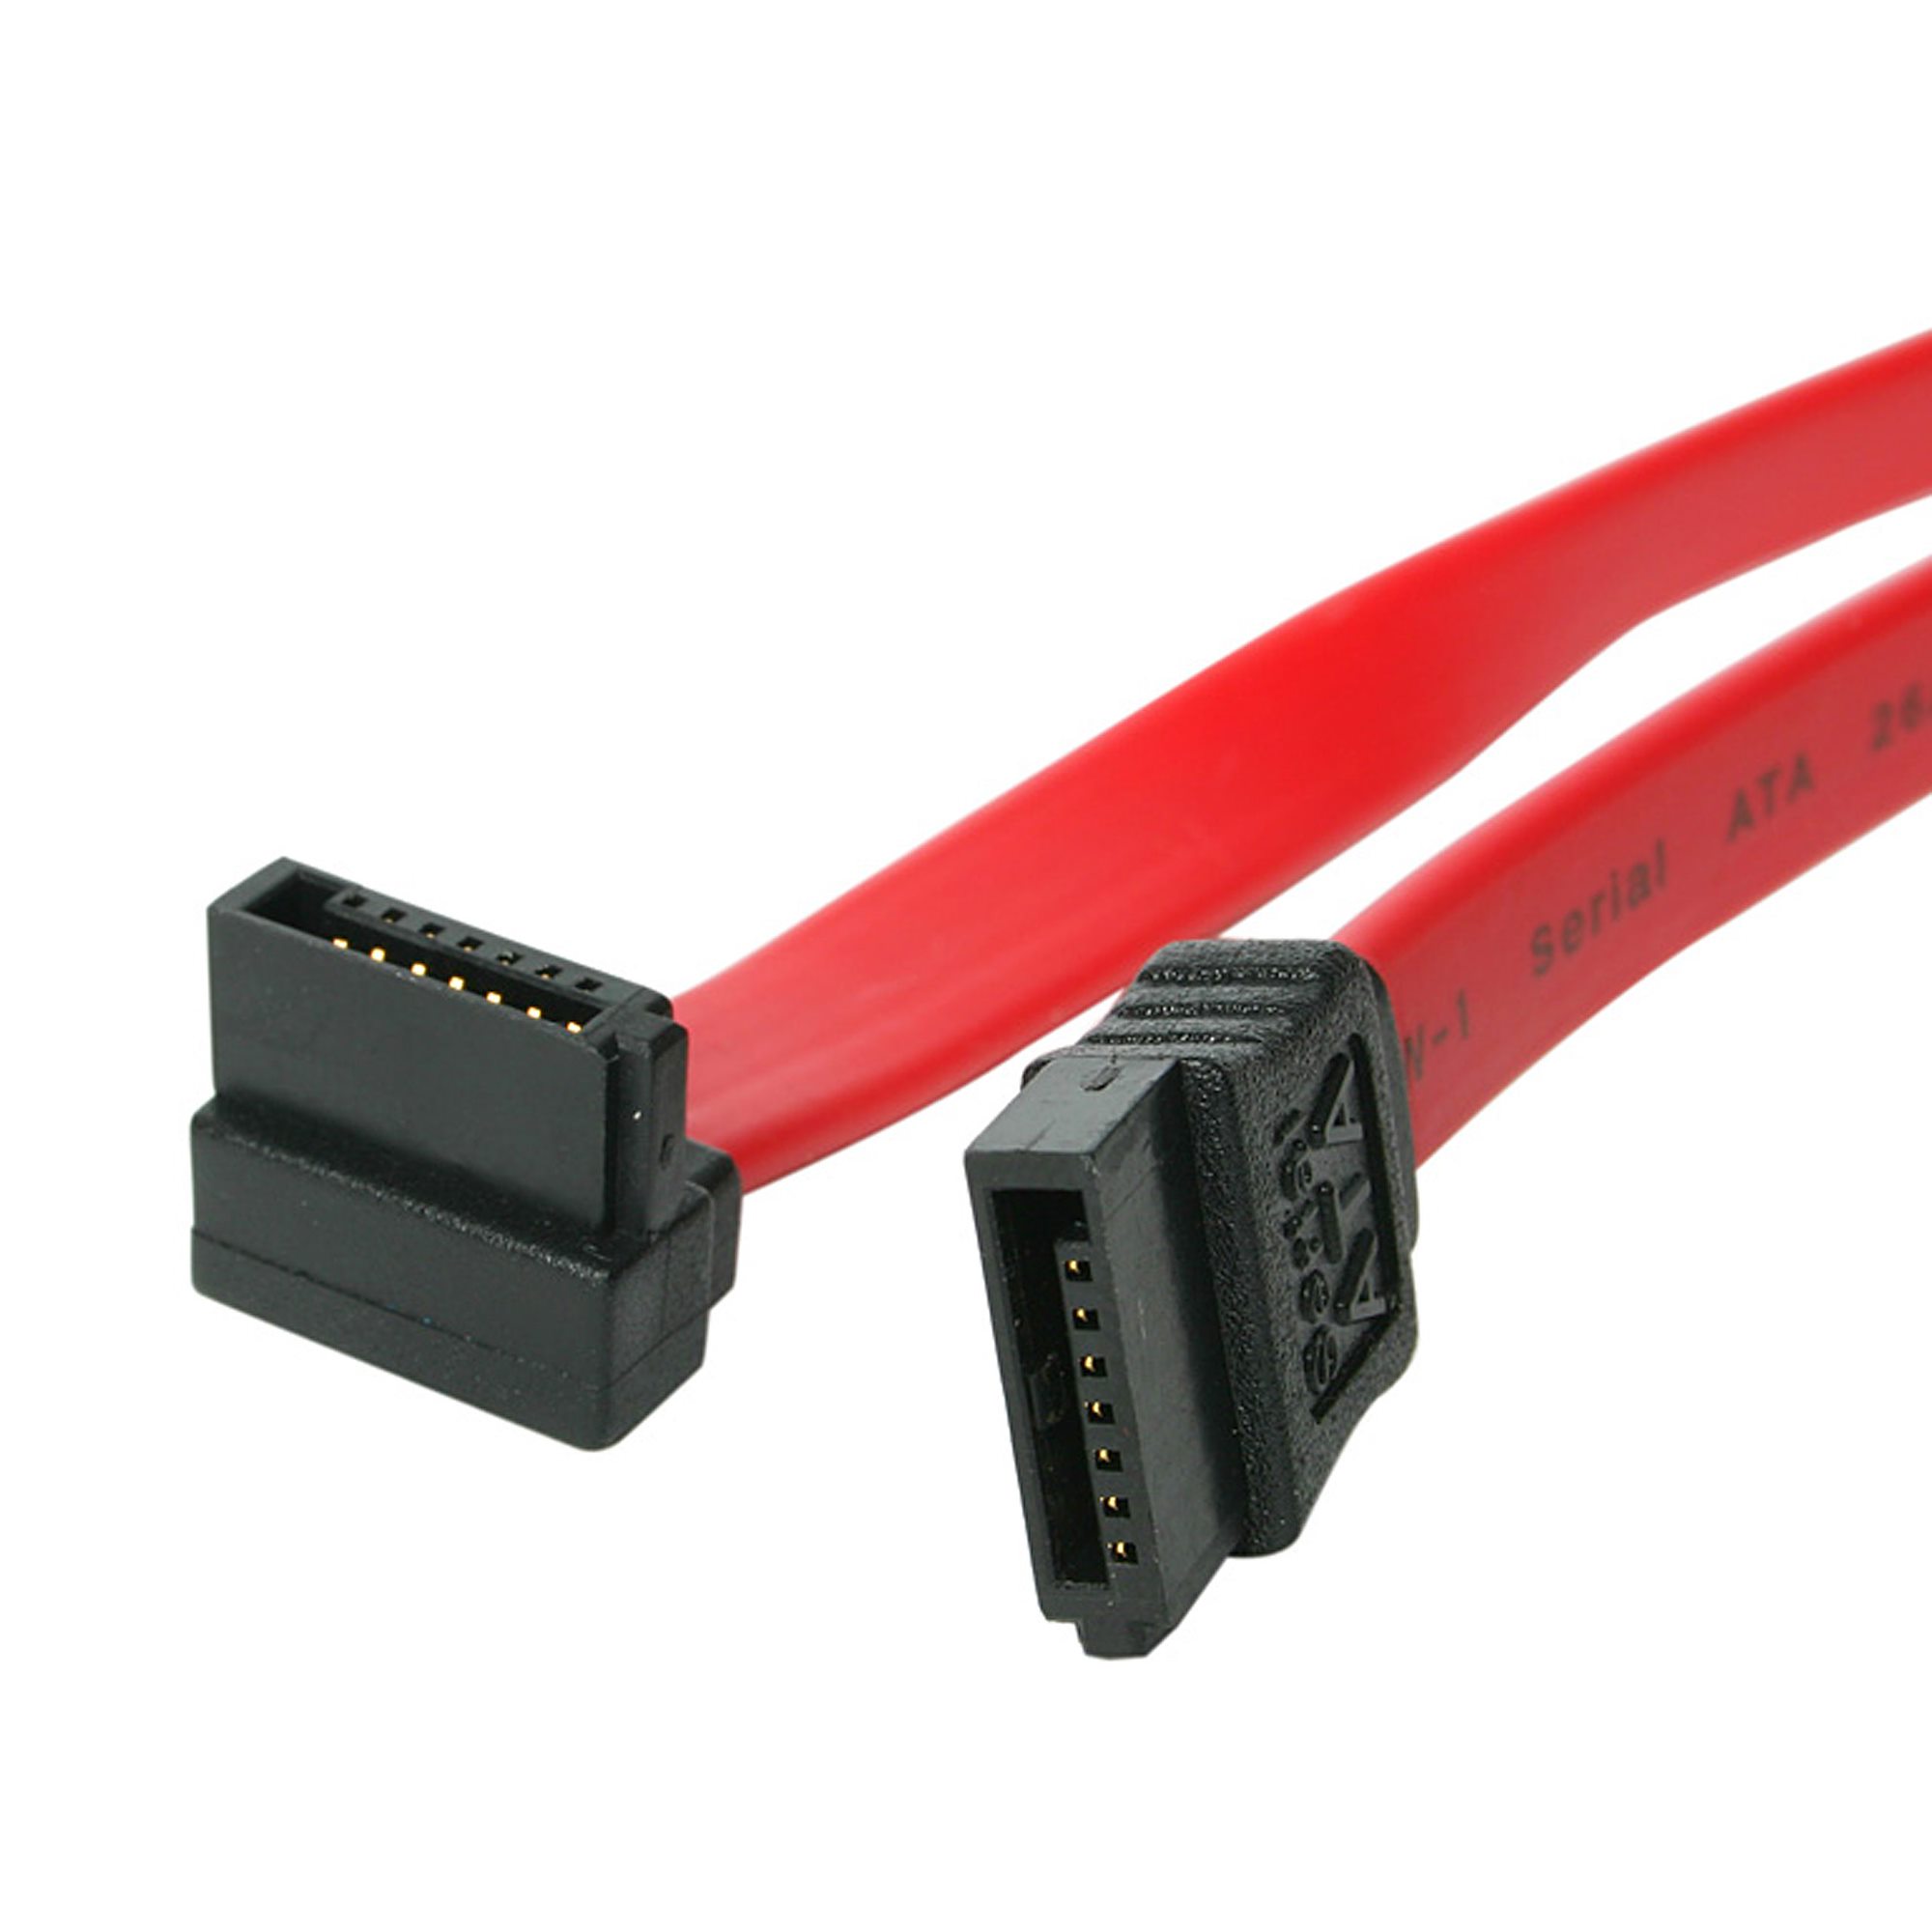 SATA to SATA Serial ATA Data Cable for Hard Drive 